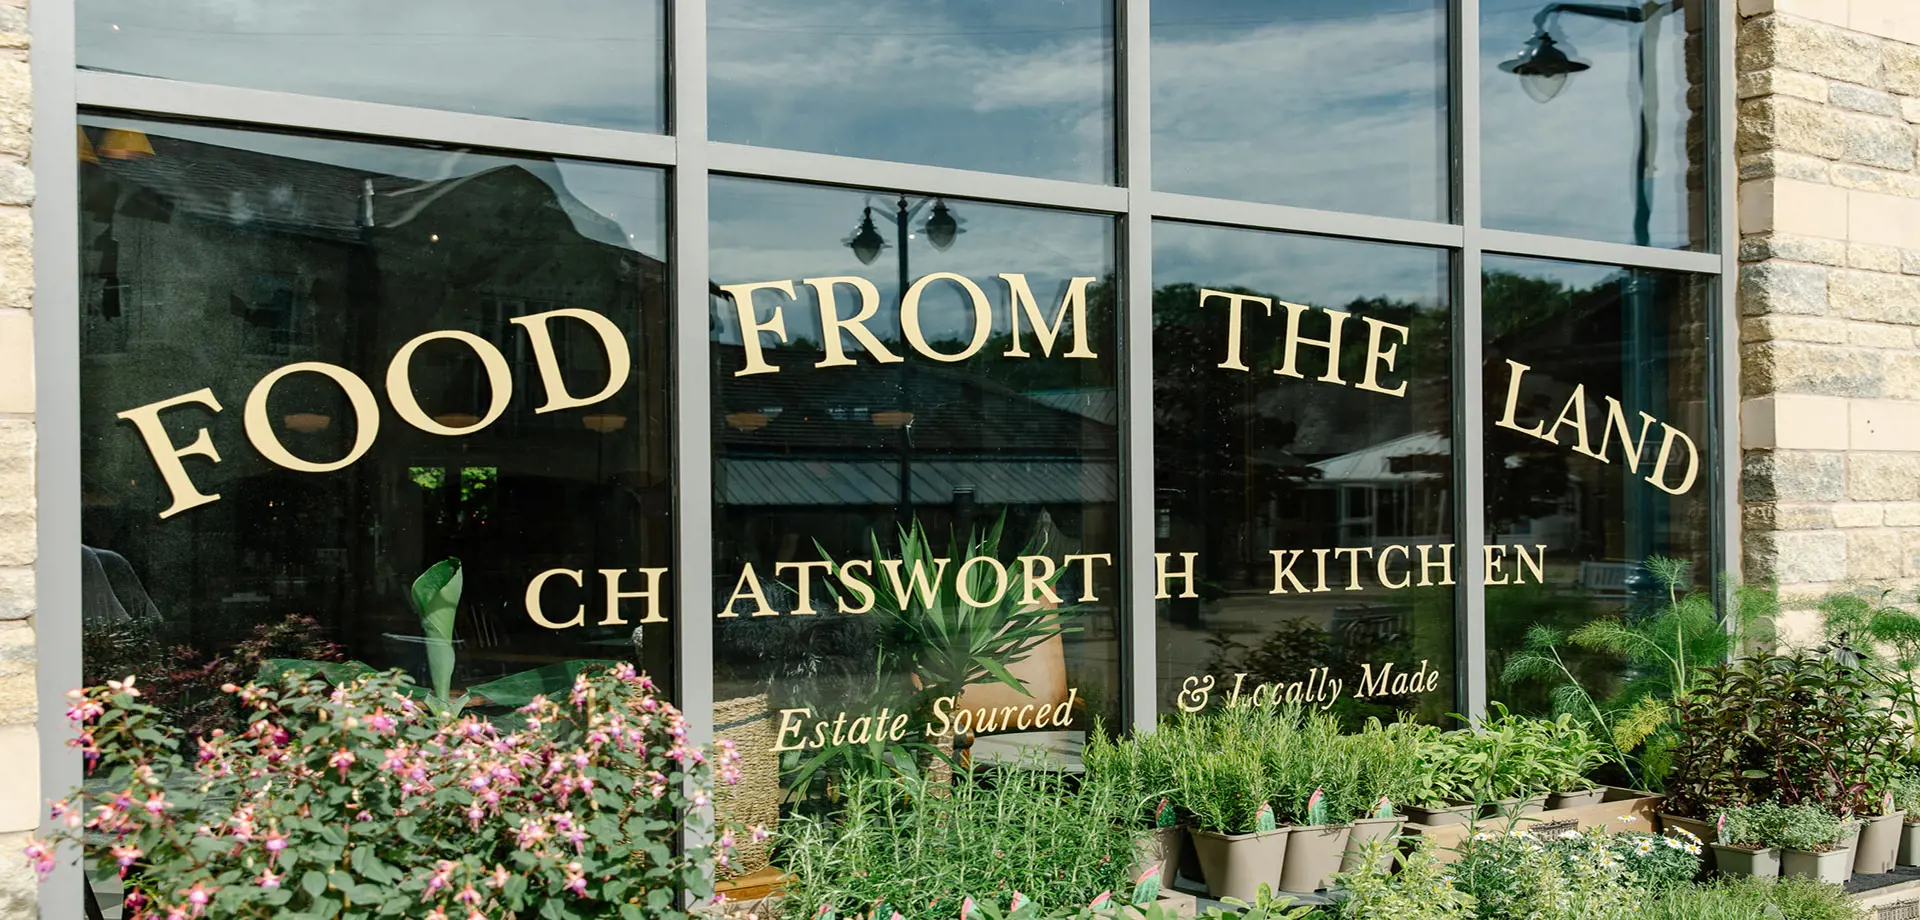 Find Chatsworth Kitchen